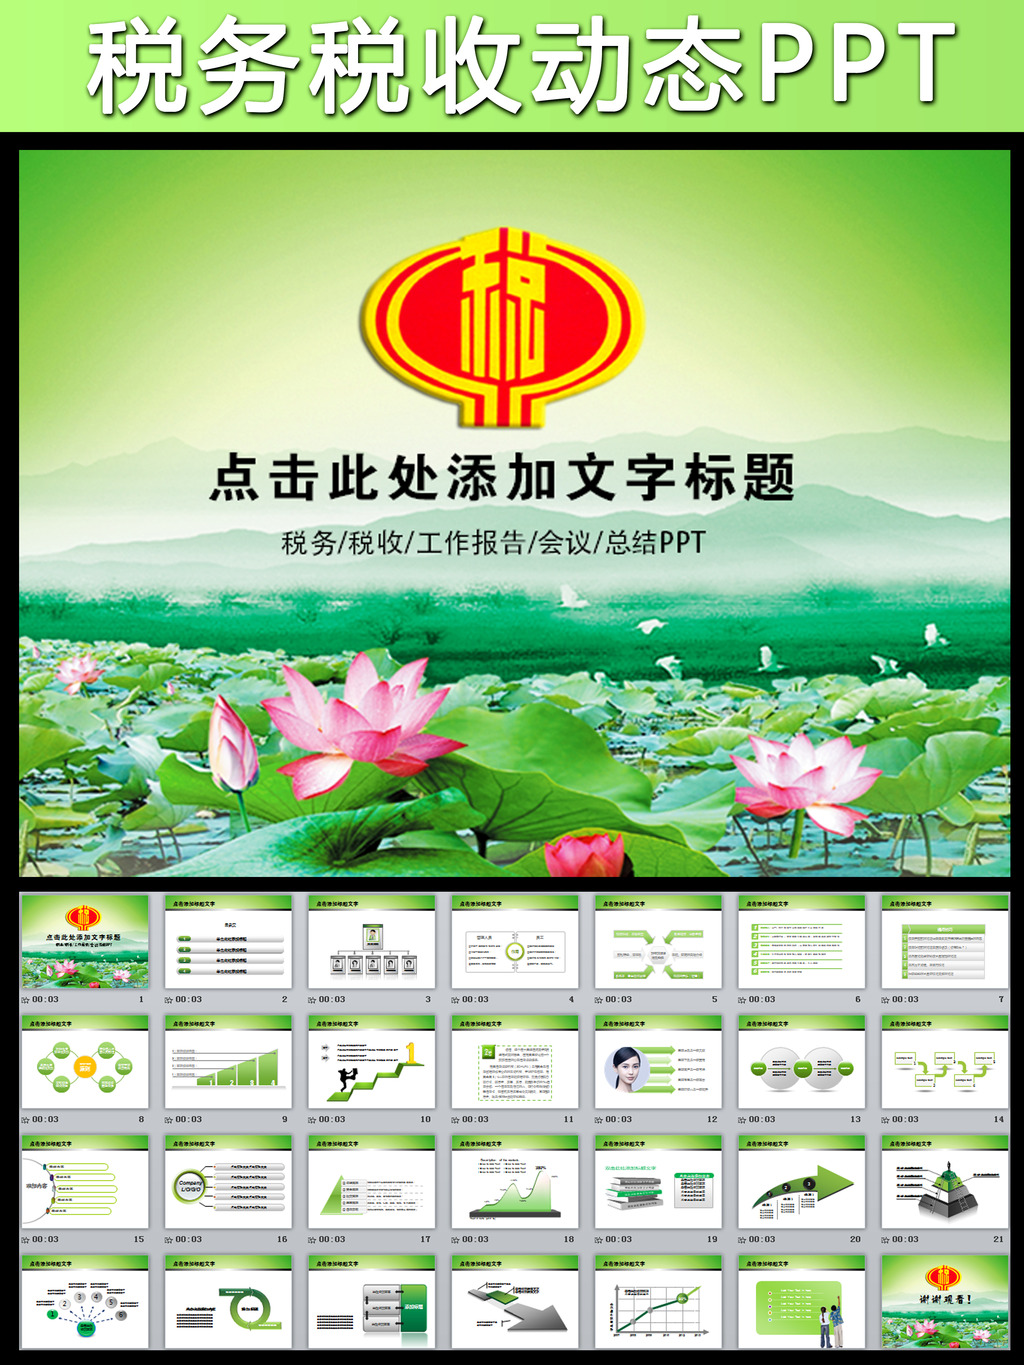 中国税务国税地税廉政动态ppt模板模板下载(图